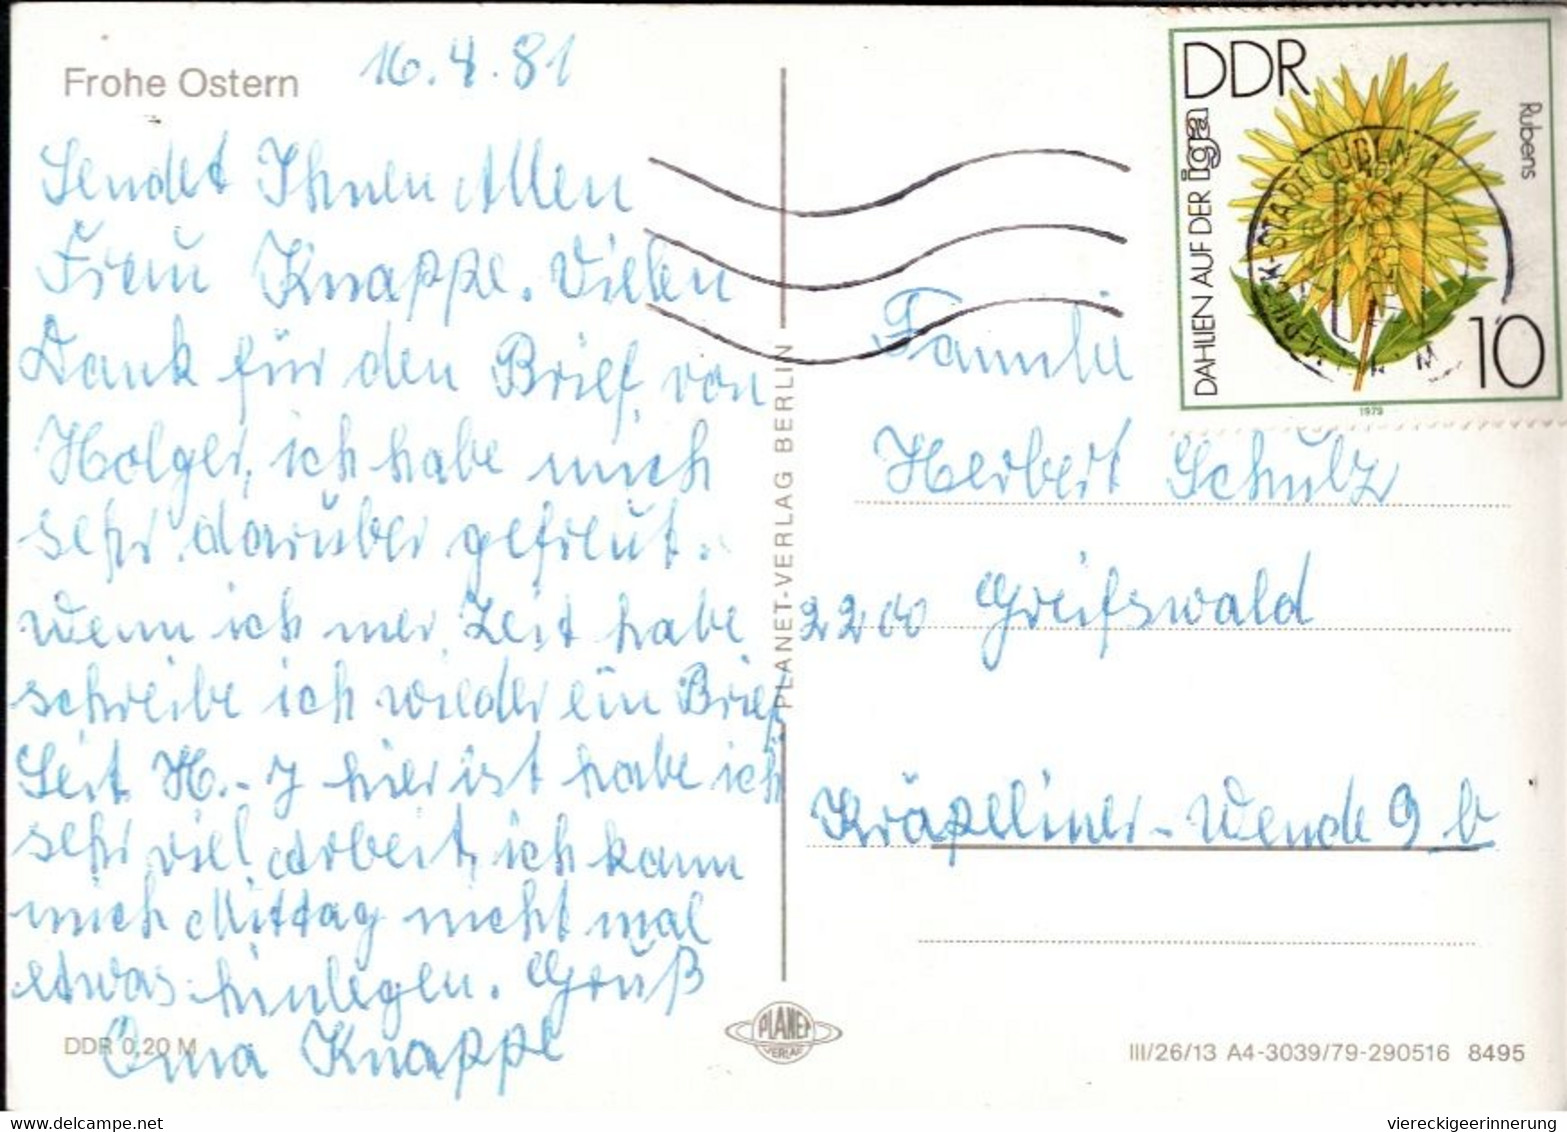 ! Lot von 19 DDR Ansichtskarten mit Maschinenstempel aus Bad Doberan, Sebnitz, Wittenberg, Wernigerode, Guben